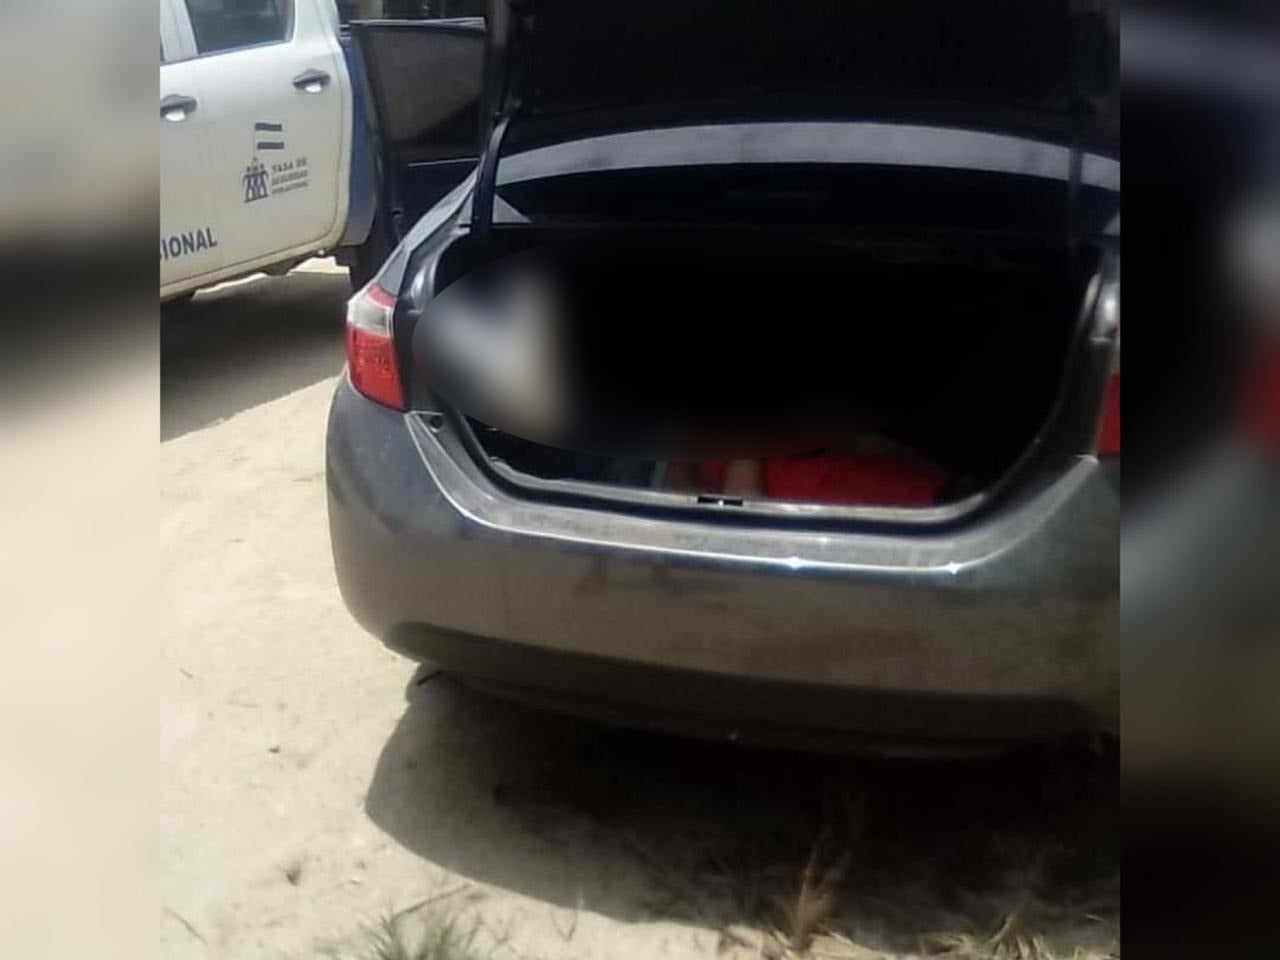 Encuentran cadáver en baúl de carro en Jutiapa